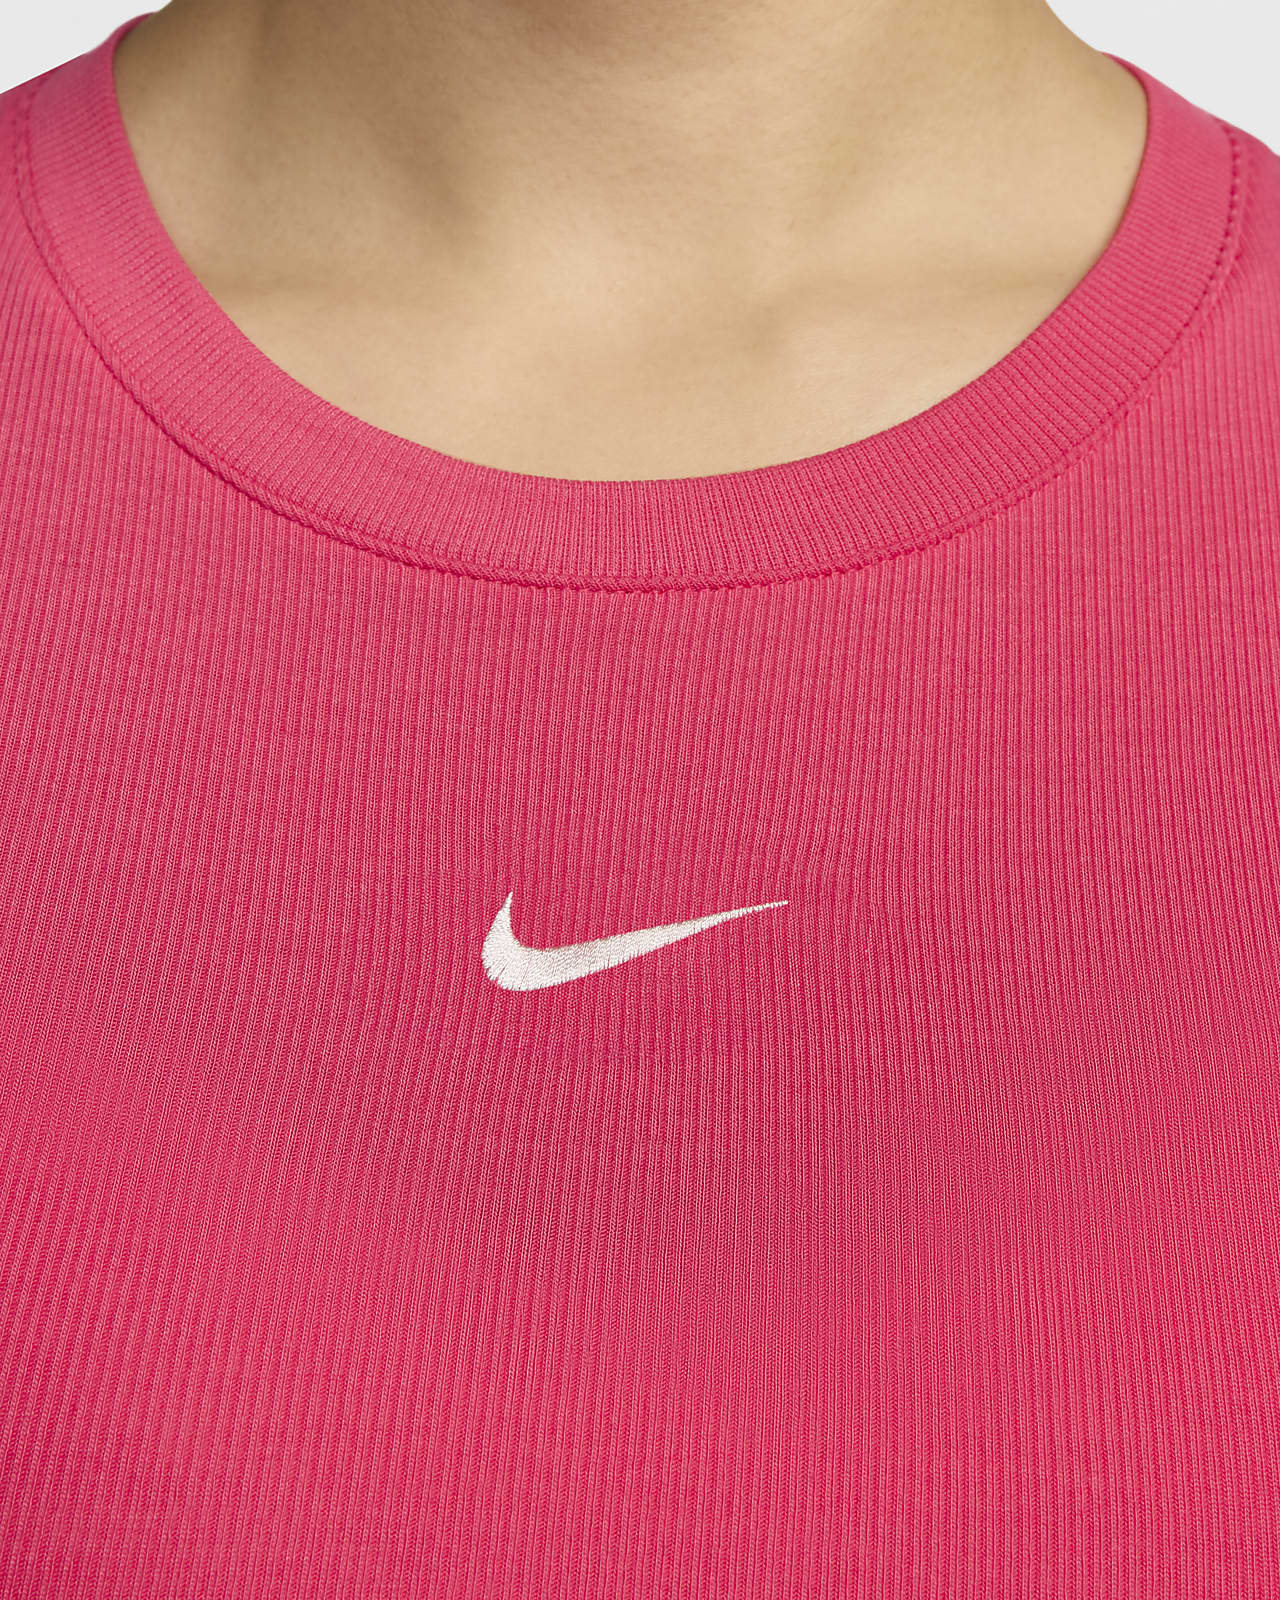 Nike AS W NSW ESSNTL RIB CRP TANK Aster PINK/SAIL - ピンク - S